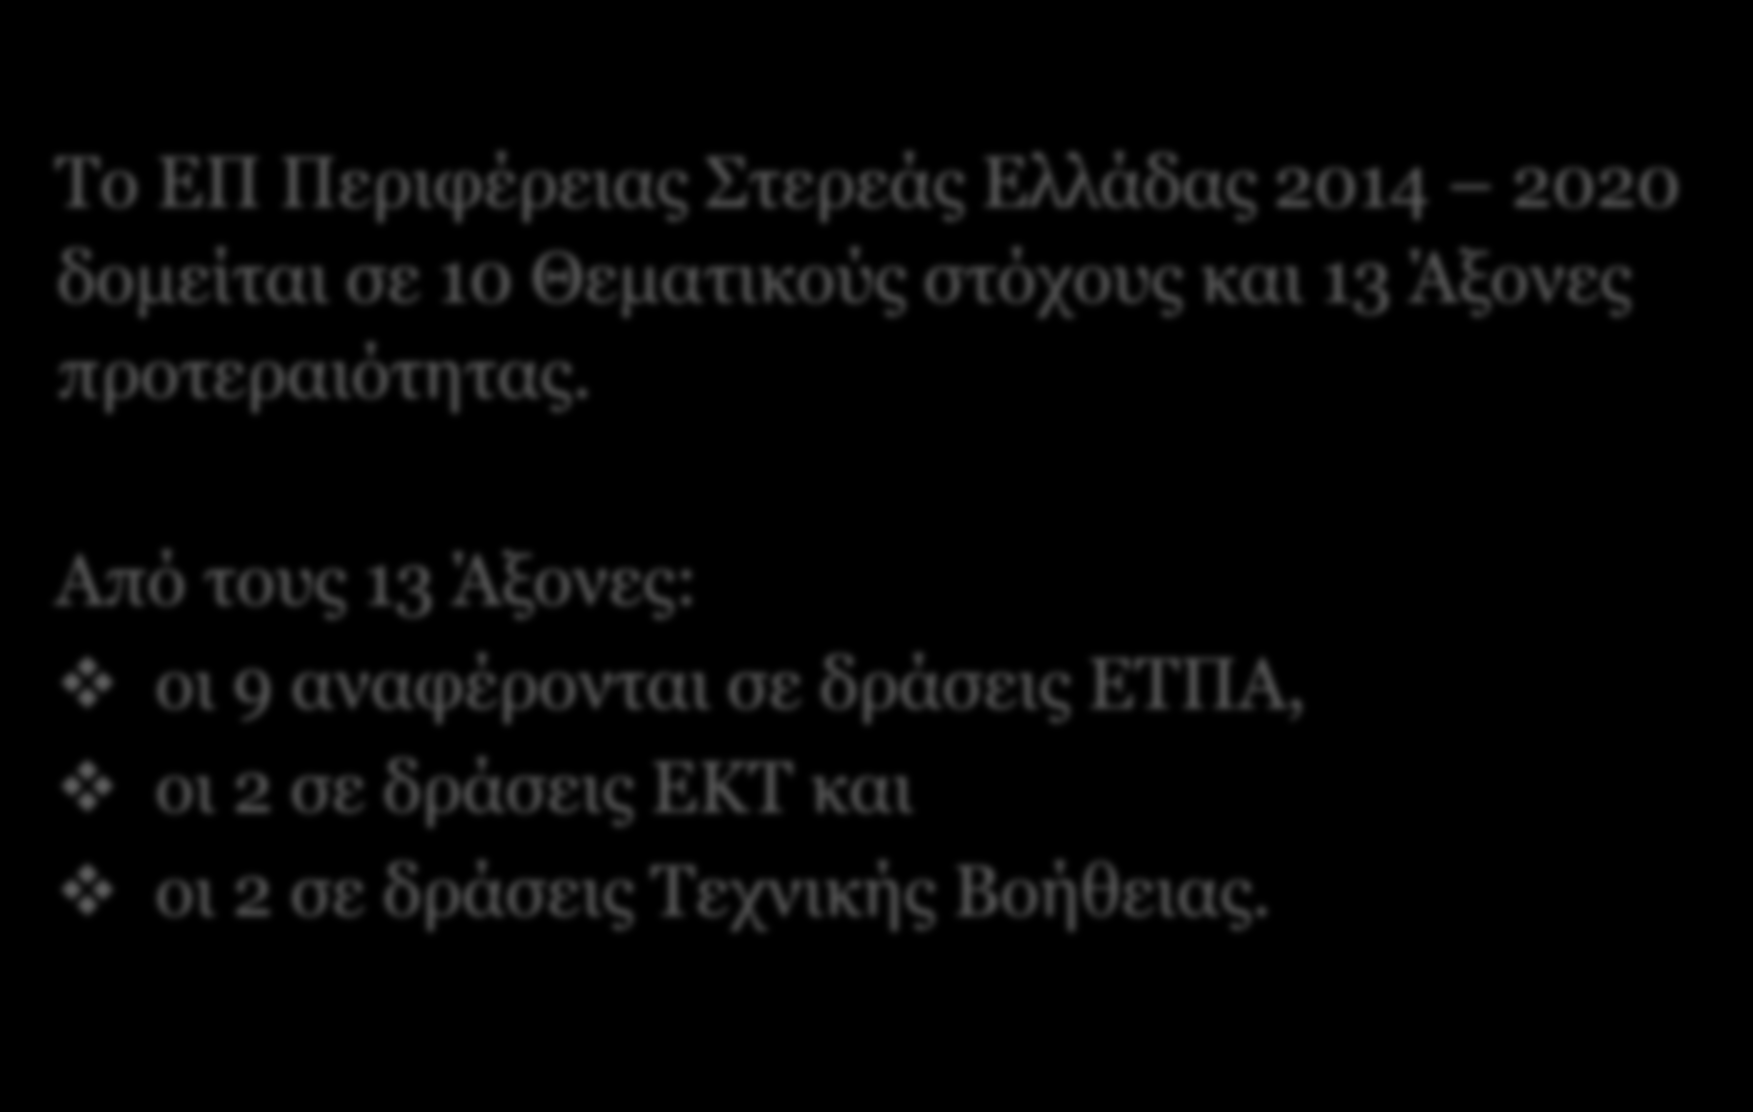 Η διάρθρωση του ΕΠ Το ΕΠ Περιφέρειας Στερεάς Ελλάδας 2014 2020 δομείται σε 10 Θεματικούς στόχους και 13 Άξονες